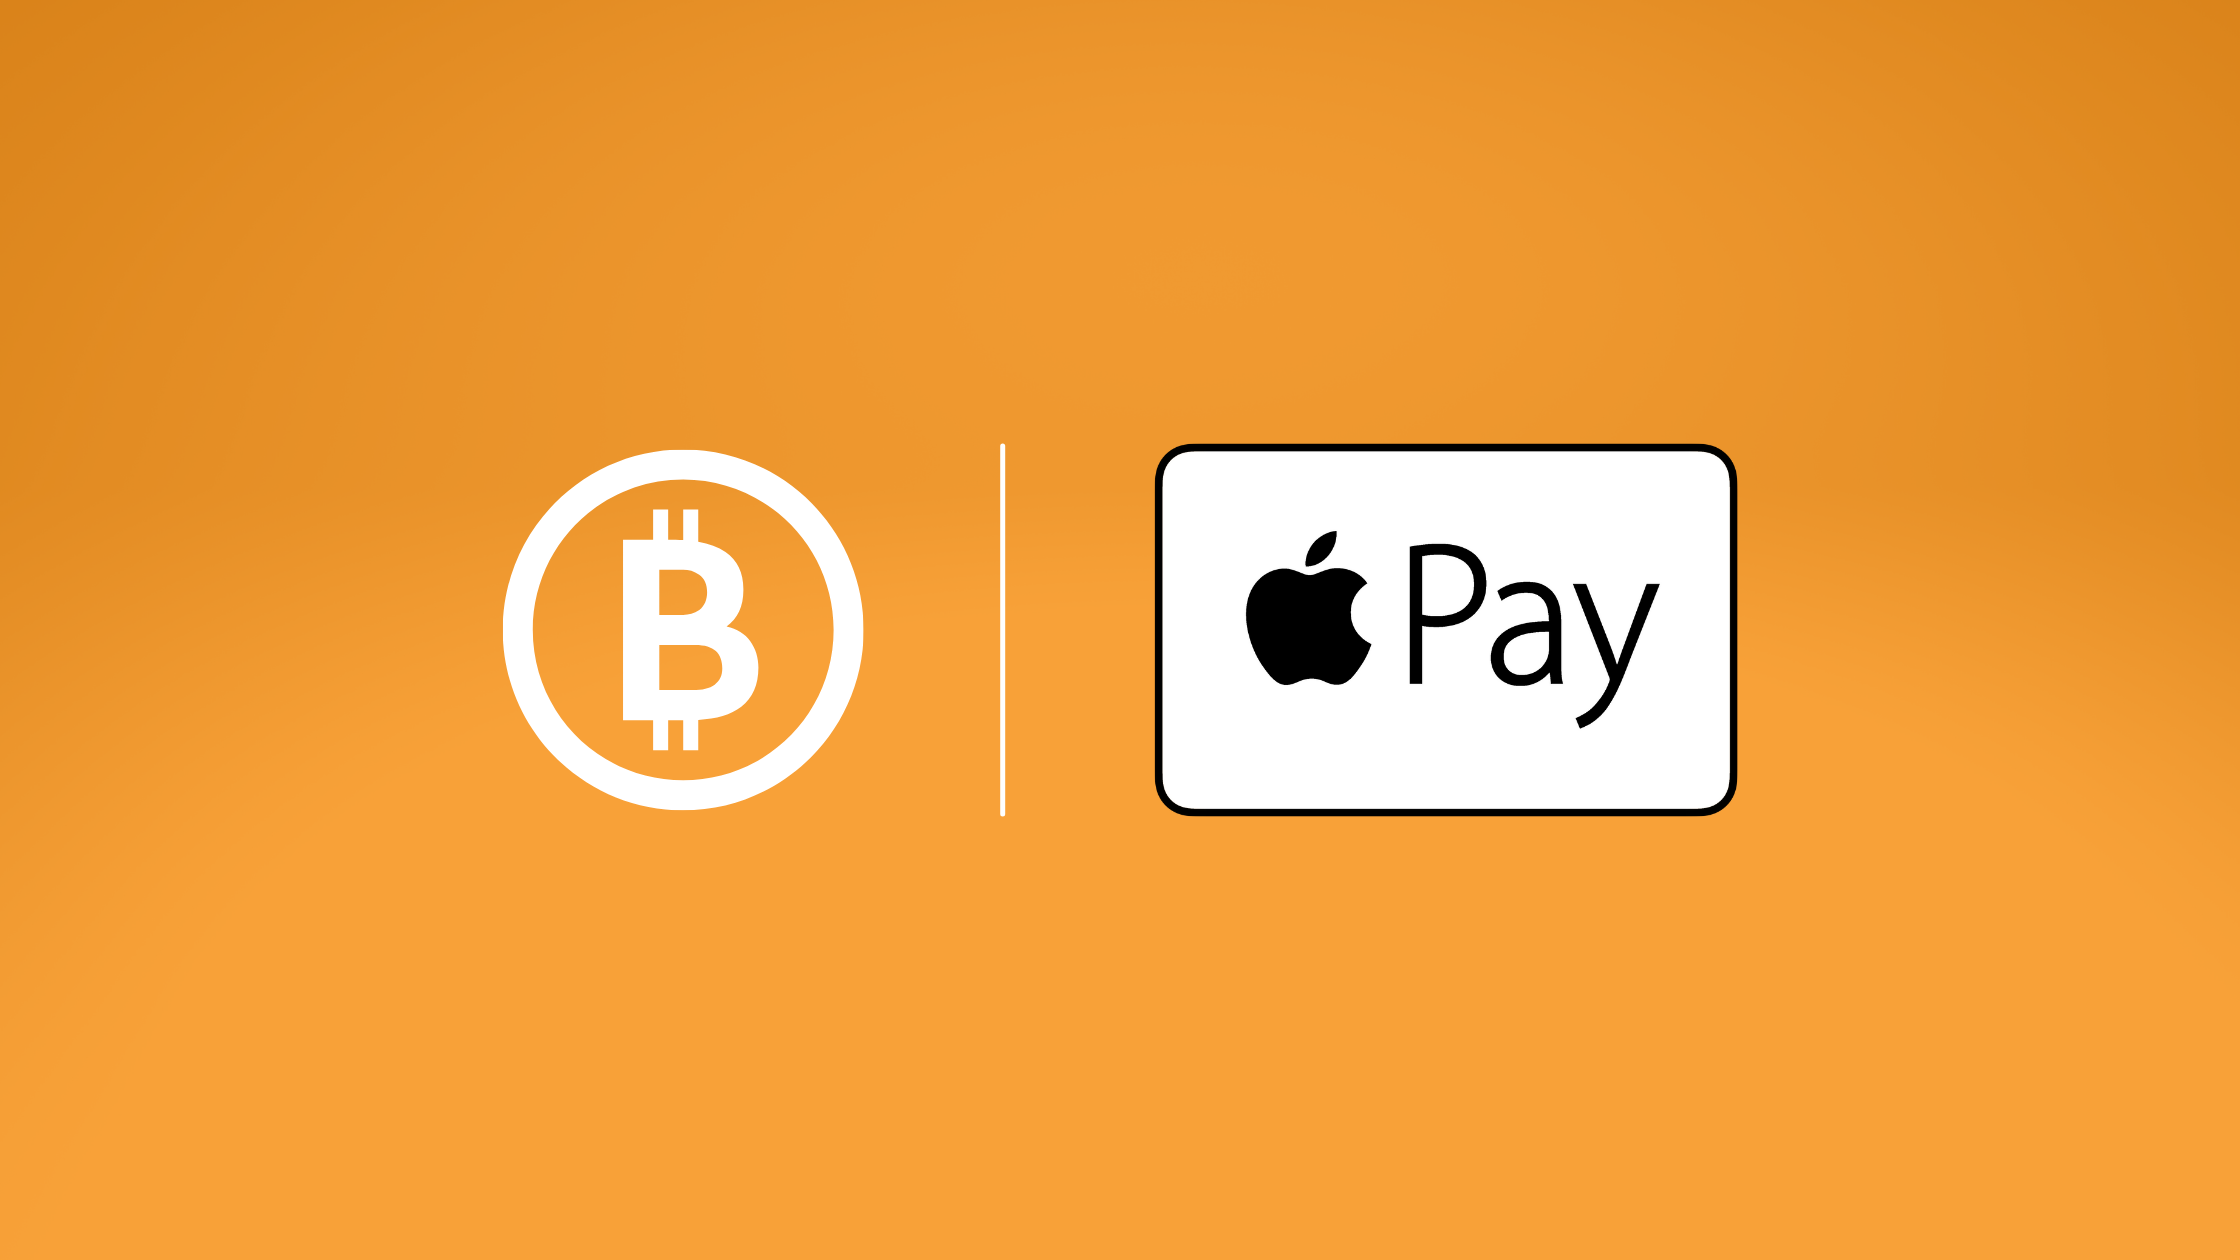 使用 Apple Pay 购买比特币 + 其他加密货币。 快速地。 简单。 安全的。